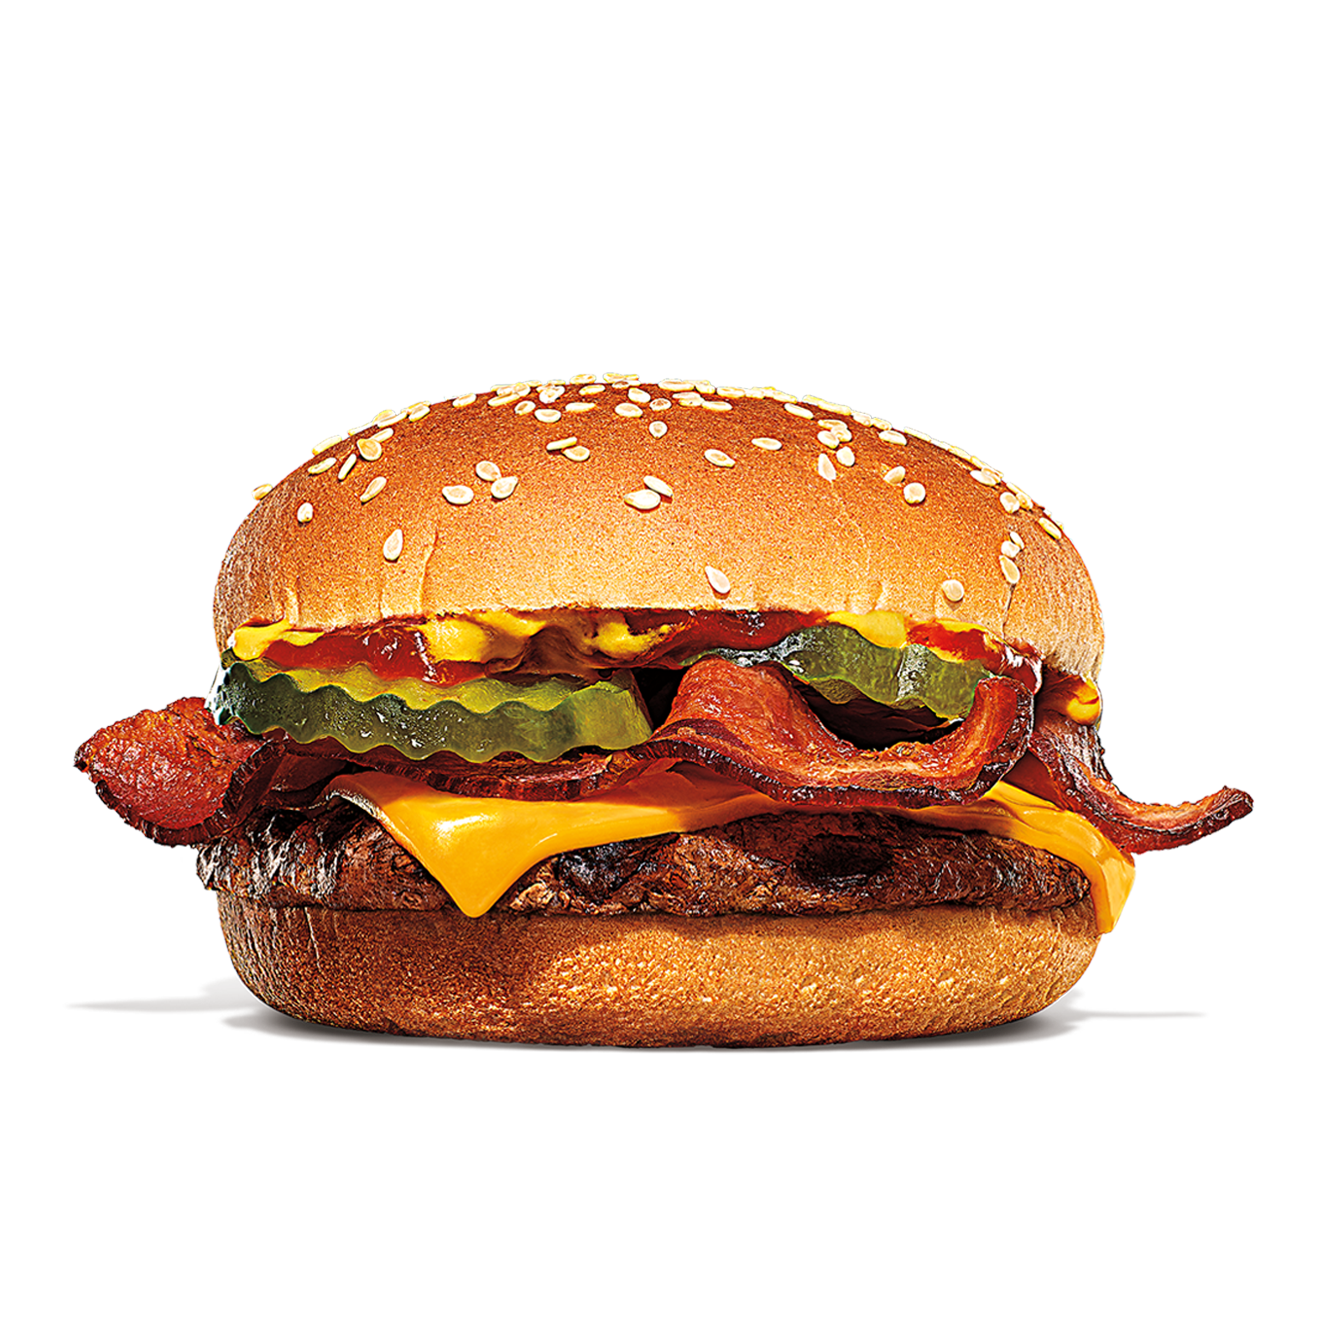 Burger King Maysville (606)759-9550